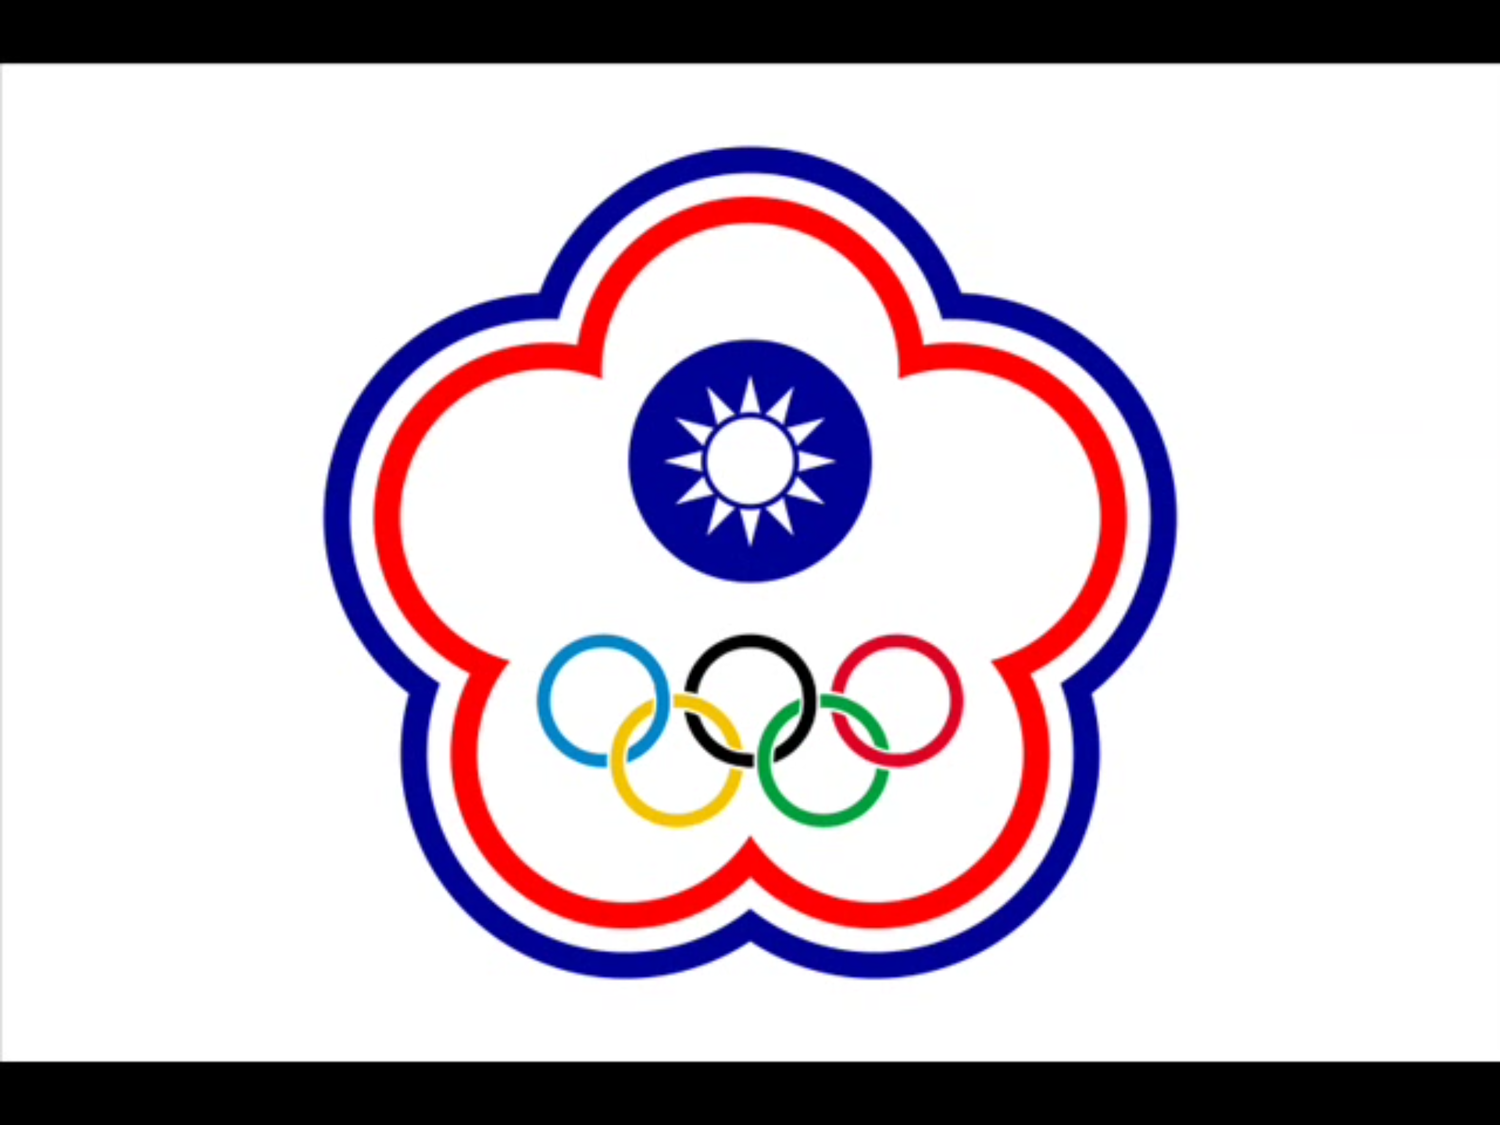 洛桑協議指的是1981年台灣與IOC在瑞士洛桑簽署的協議，確認未來參與國際型運動賽會，都要以「中華台北」為參賽名稱，僅能以五環梅花會旗替代青天白日滿地紅的國旗，奪金後也只能播放國旗歌，而非國歌，換取台灣運動員的出賽權利。   圖：翻攝自Youtube